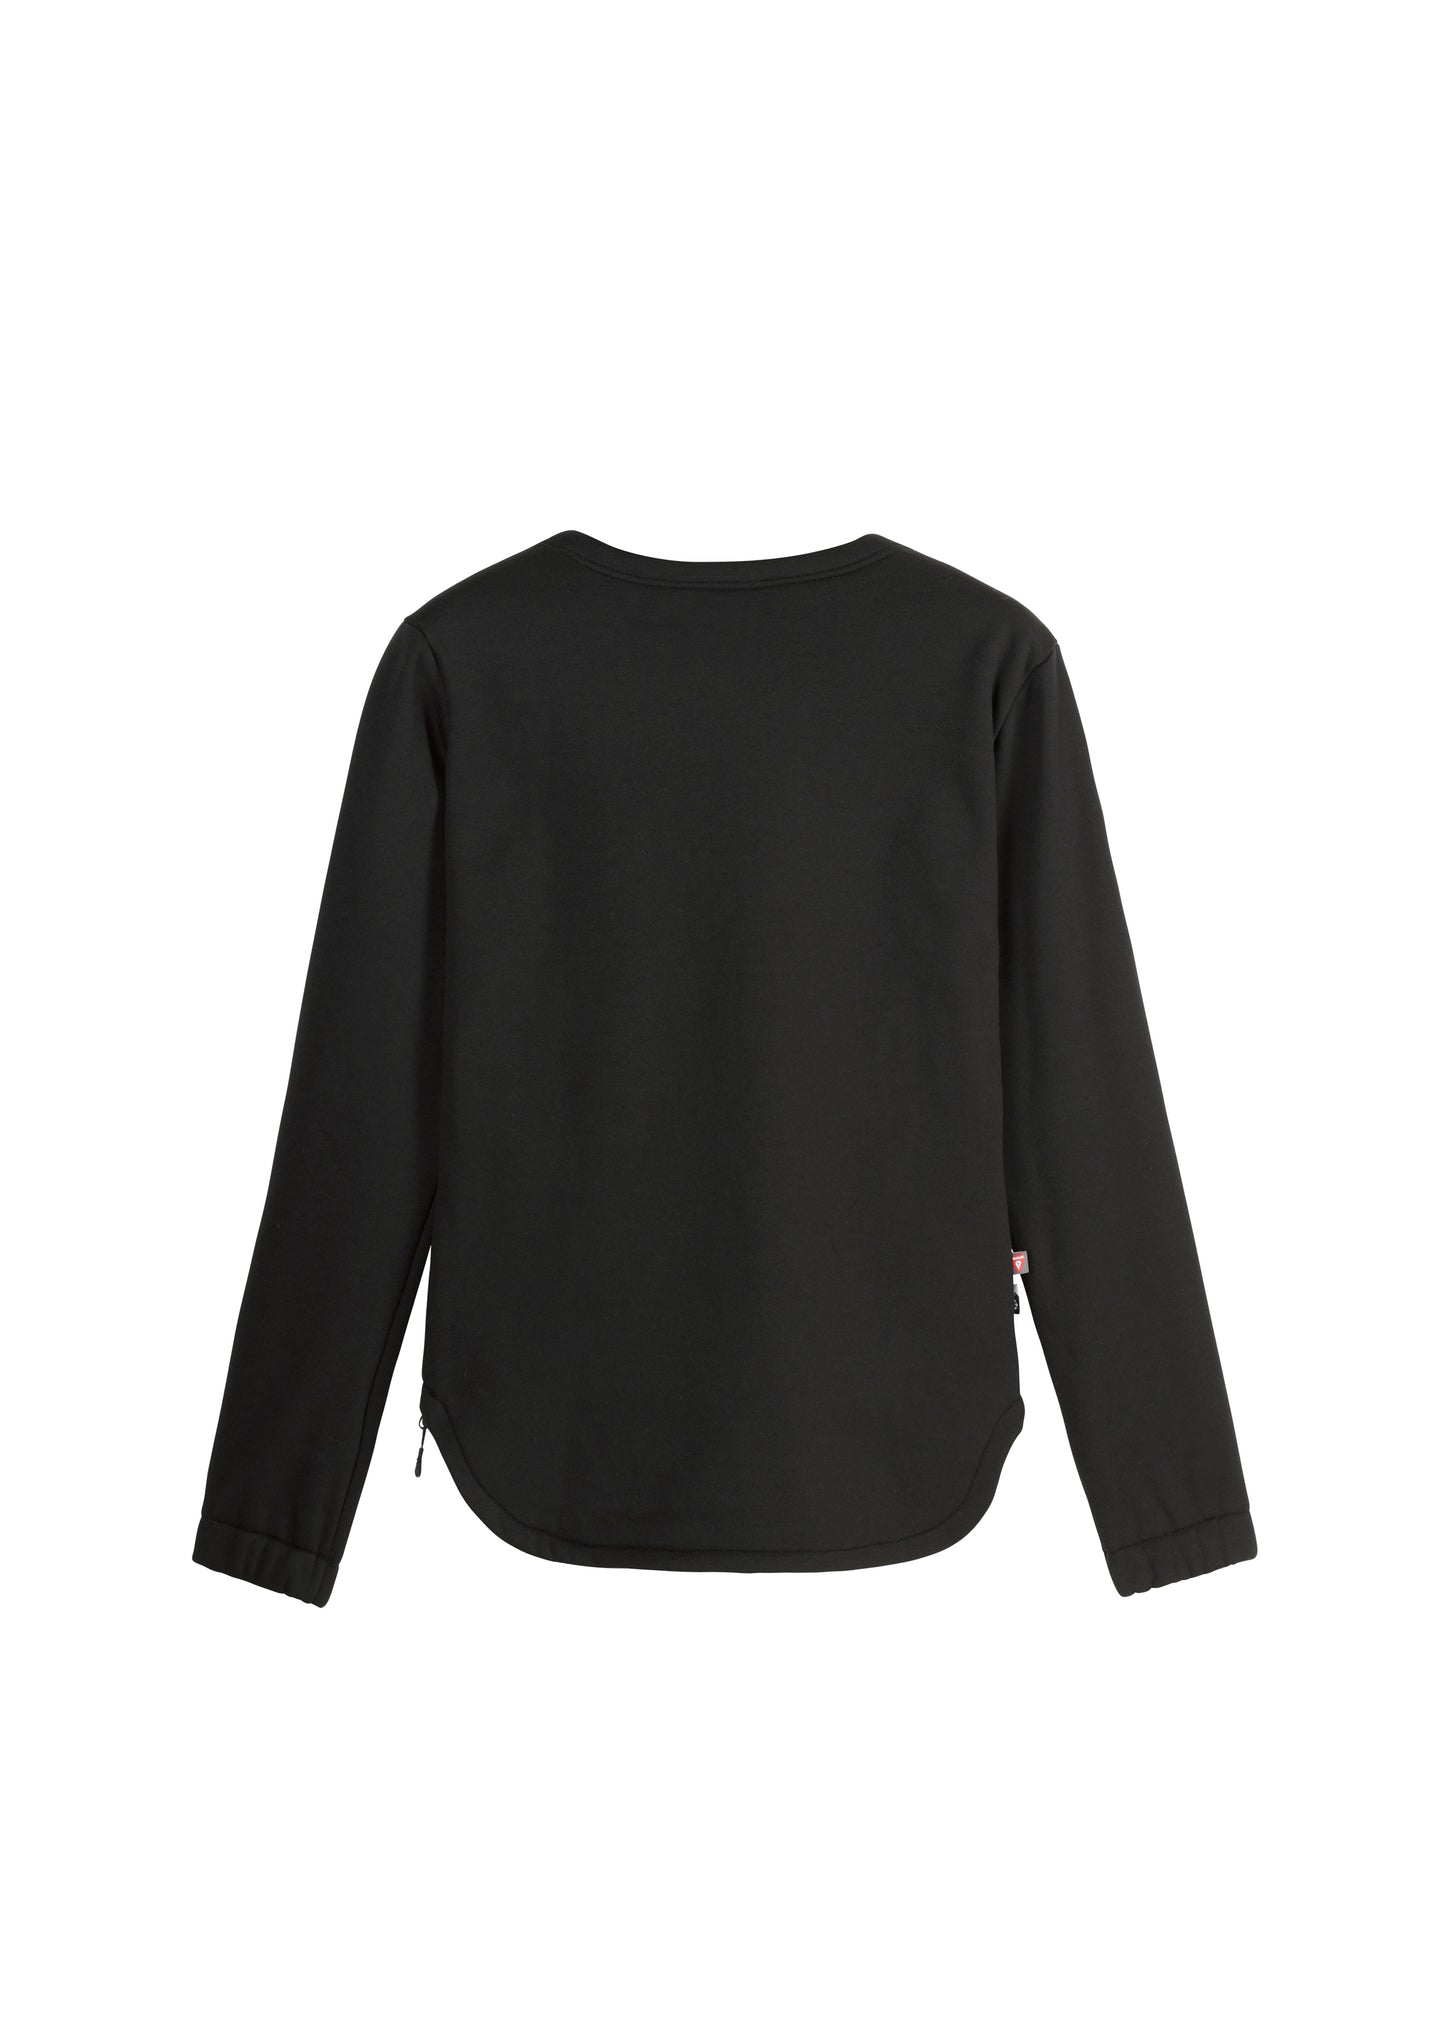 Picture Lixi Tech Sweater 2024 - Women's